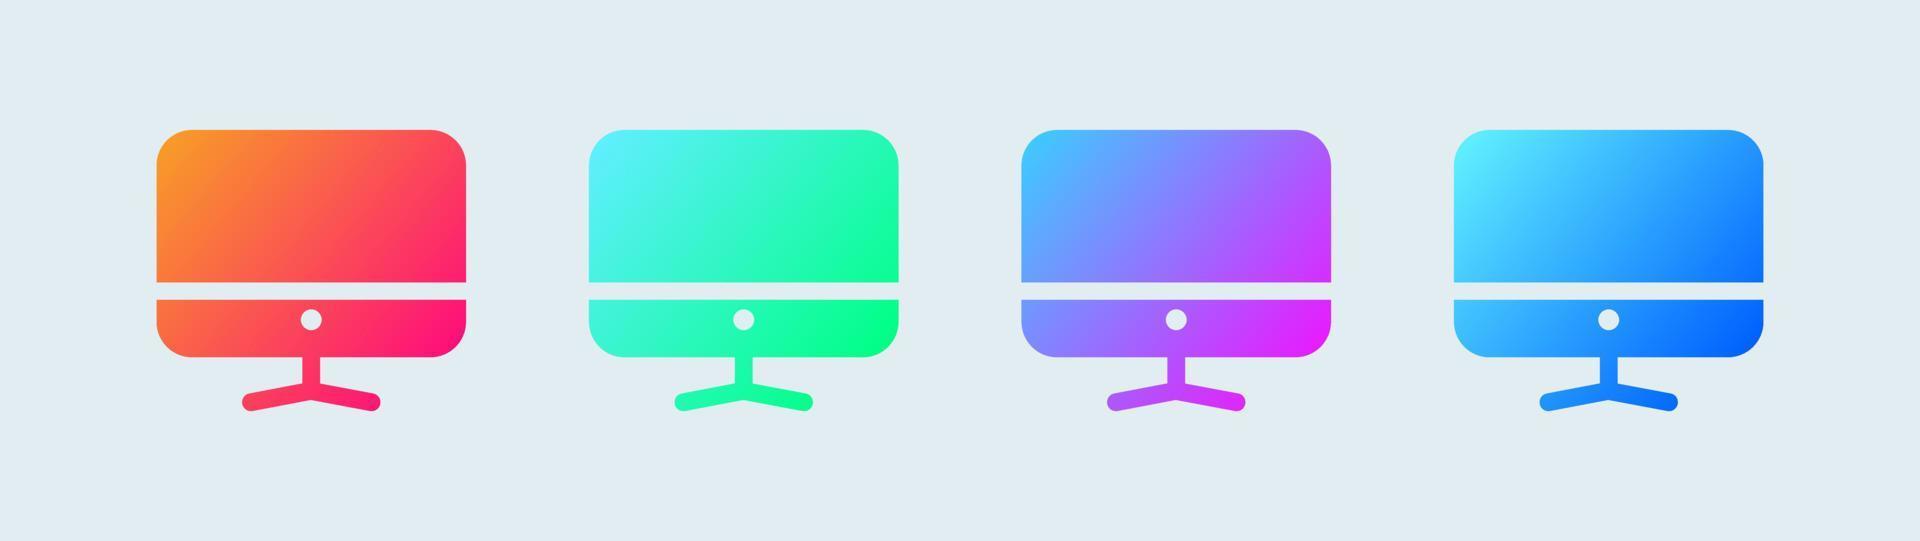 dator solid ikon i gradient färger. desktop monitor tecken vektor illustration.